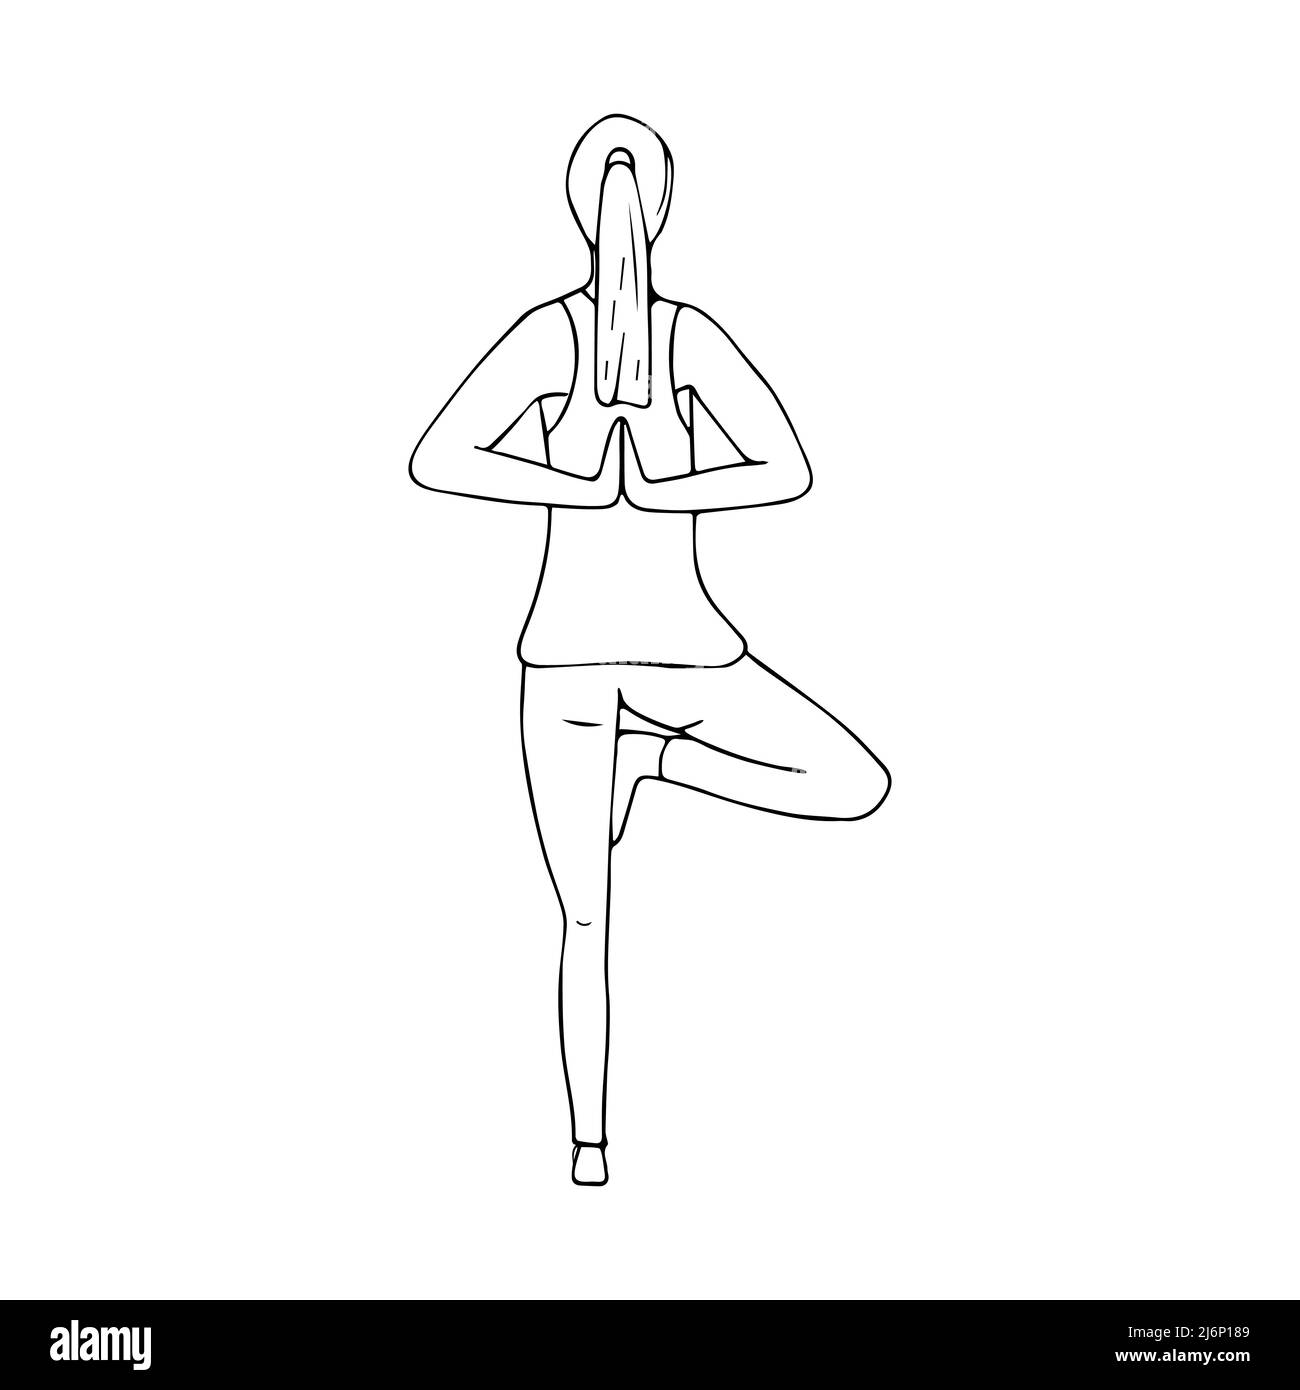 Ein junges Mädchen praktiziert Hatha Yoga. Namaste. Hände hinter dem Rücken. Indische Kultur. Gymnastik, gesunder Lebensstil. Doodle-Stil. Schwarz-Weiß-vecto Stock Vektor